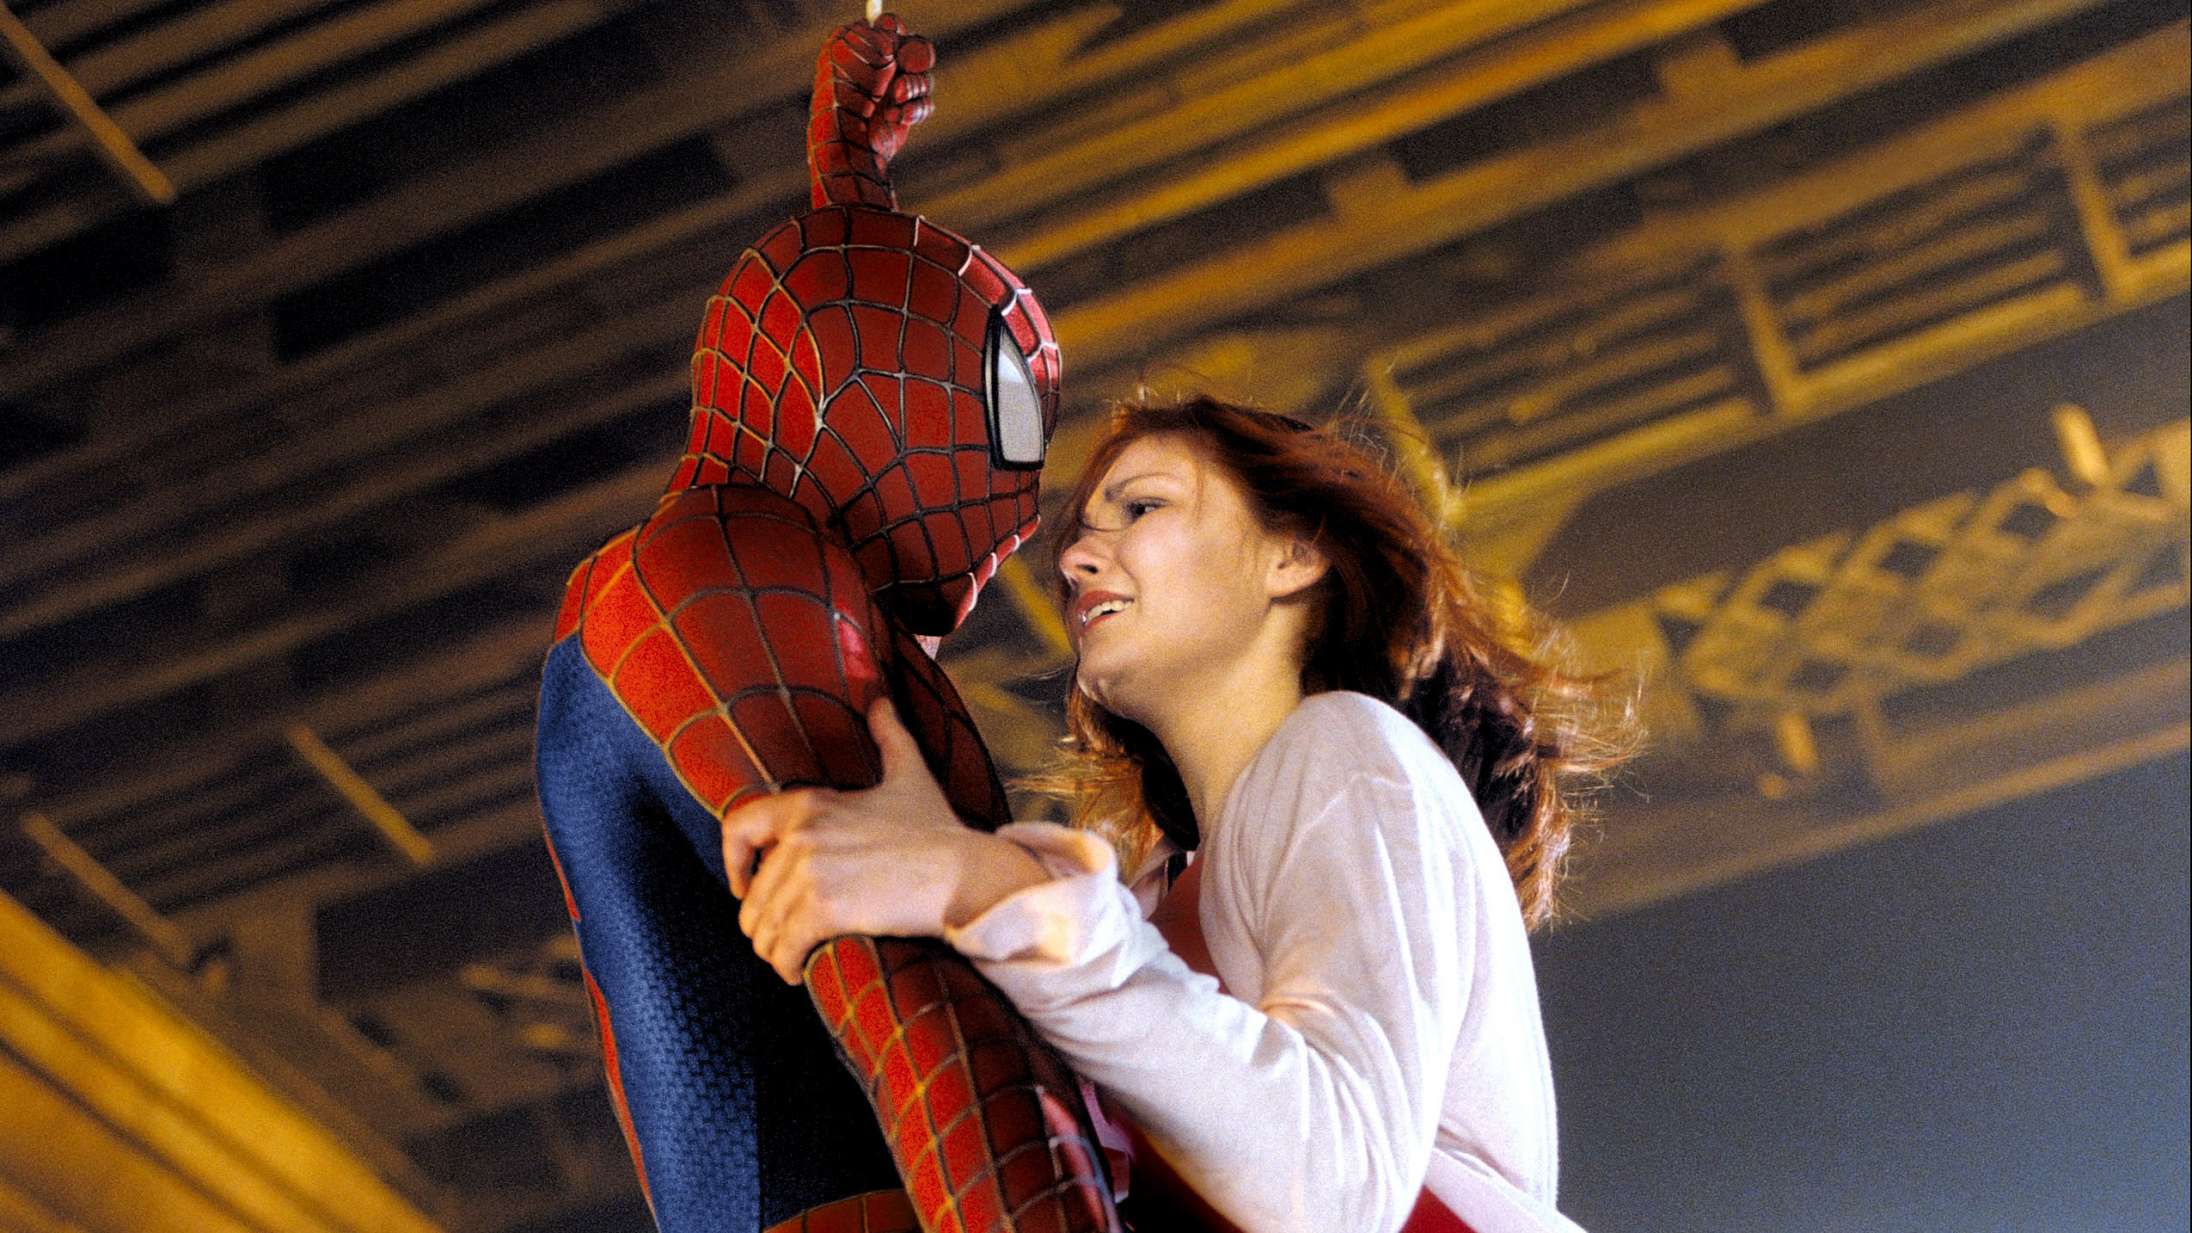 For 20 år siden ændrede ’Spider-Man’ superheltegenren – især takket være én mand med en vision